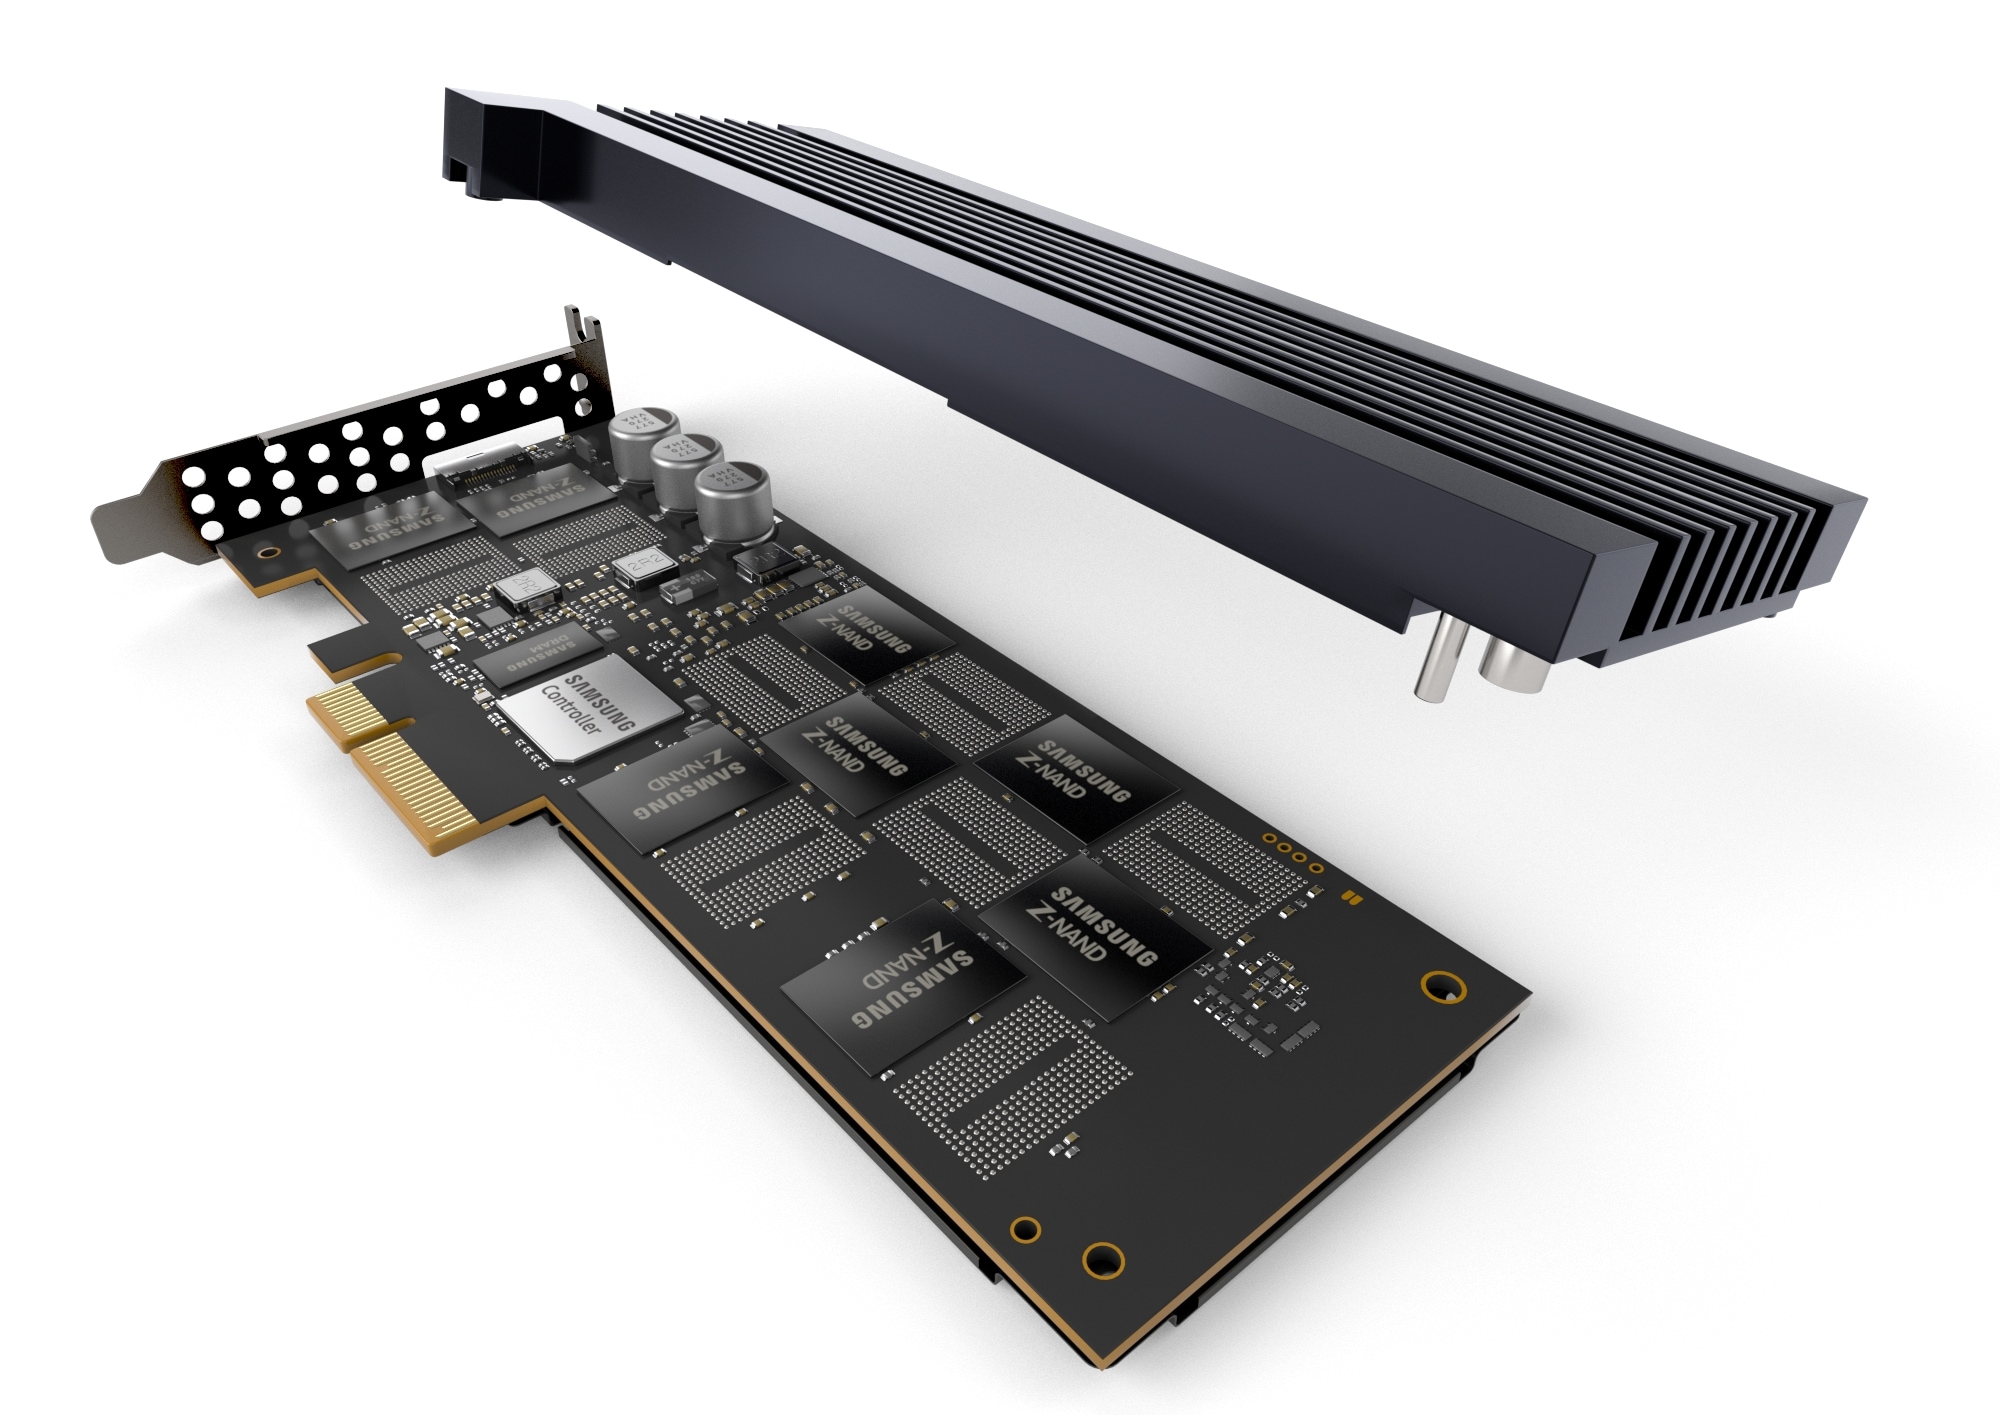 삼성전자가 출시하는 차세대 슈커컴퓨터용 ‘800GB(기가바이트) Z-SSD’ 제품의 내부가 잘보이는 이미지